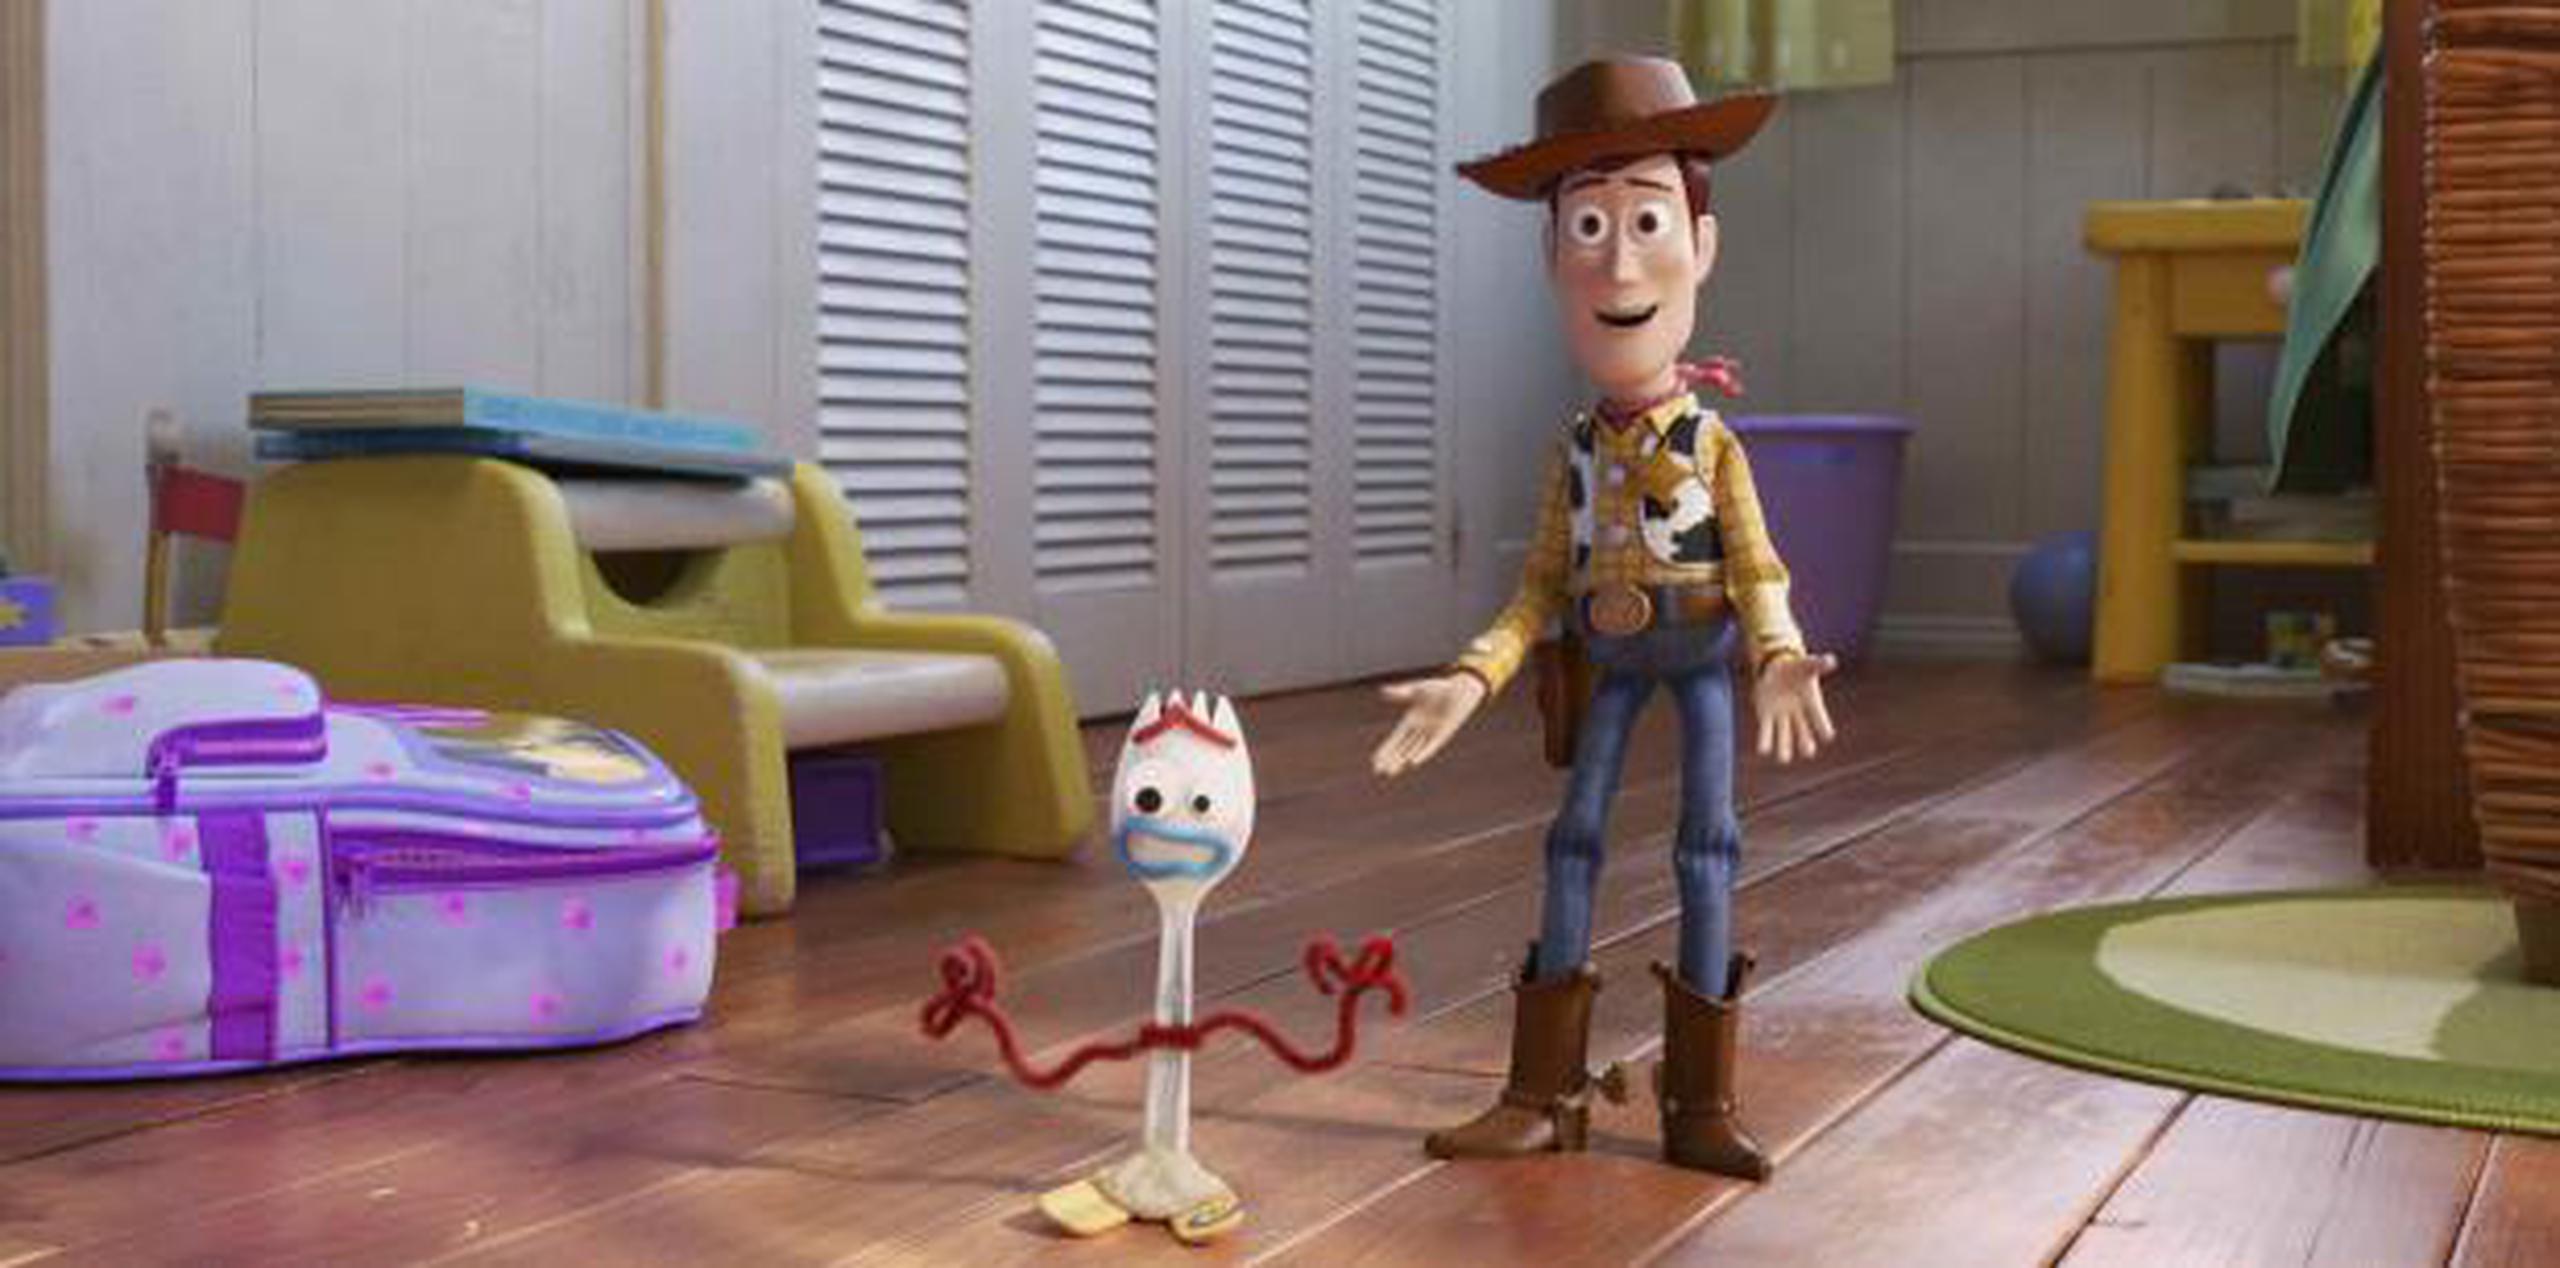 Desde su estreno en junio pasado, “Toy Story” ha recaudado más de $330 millones. (Archivo)